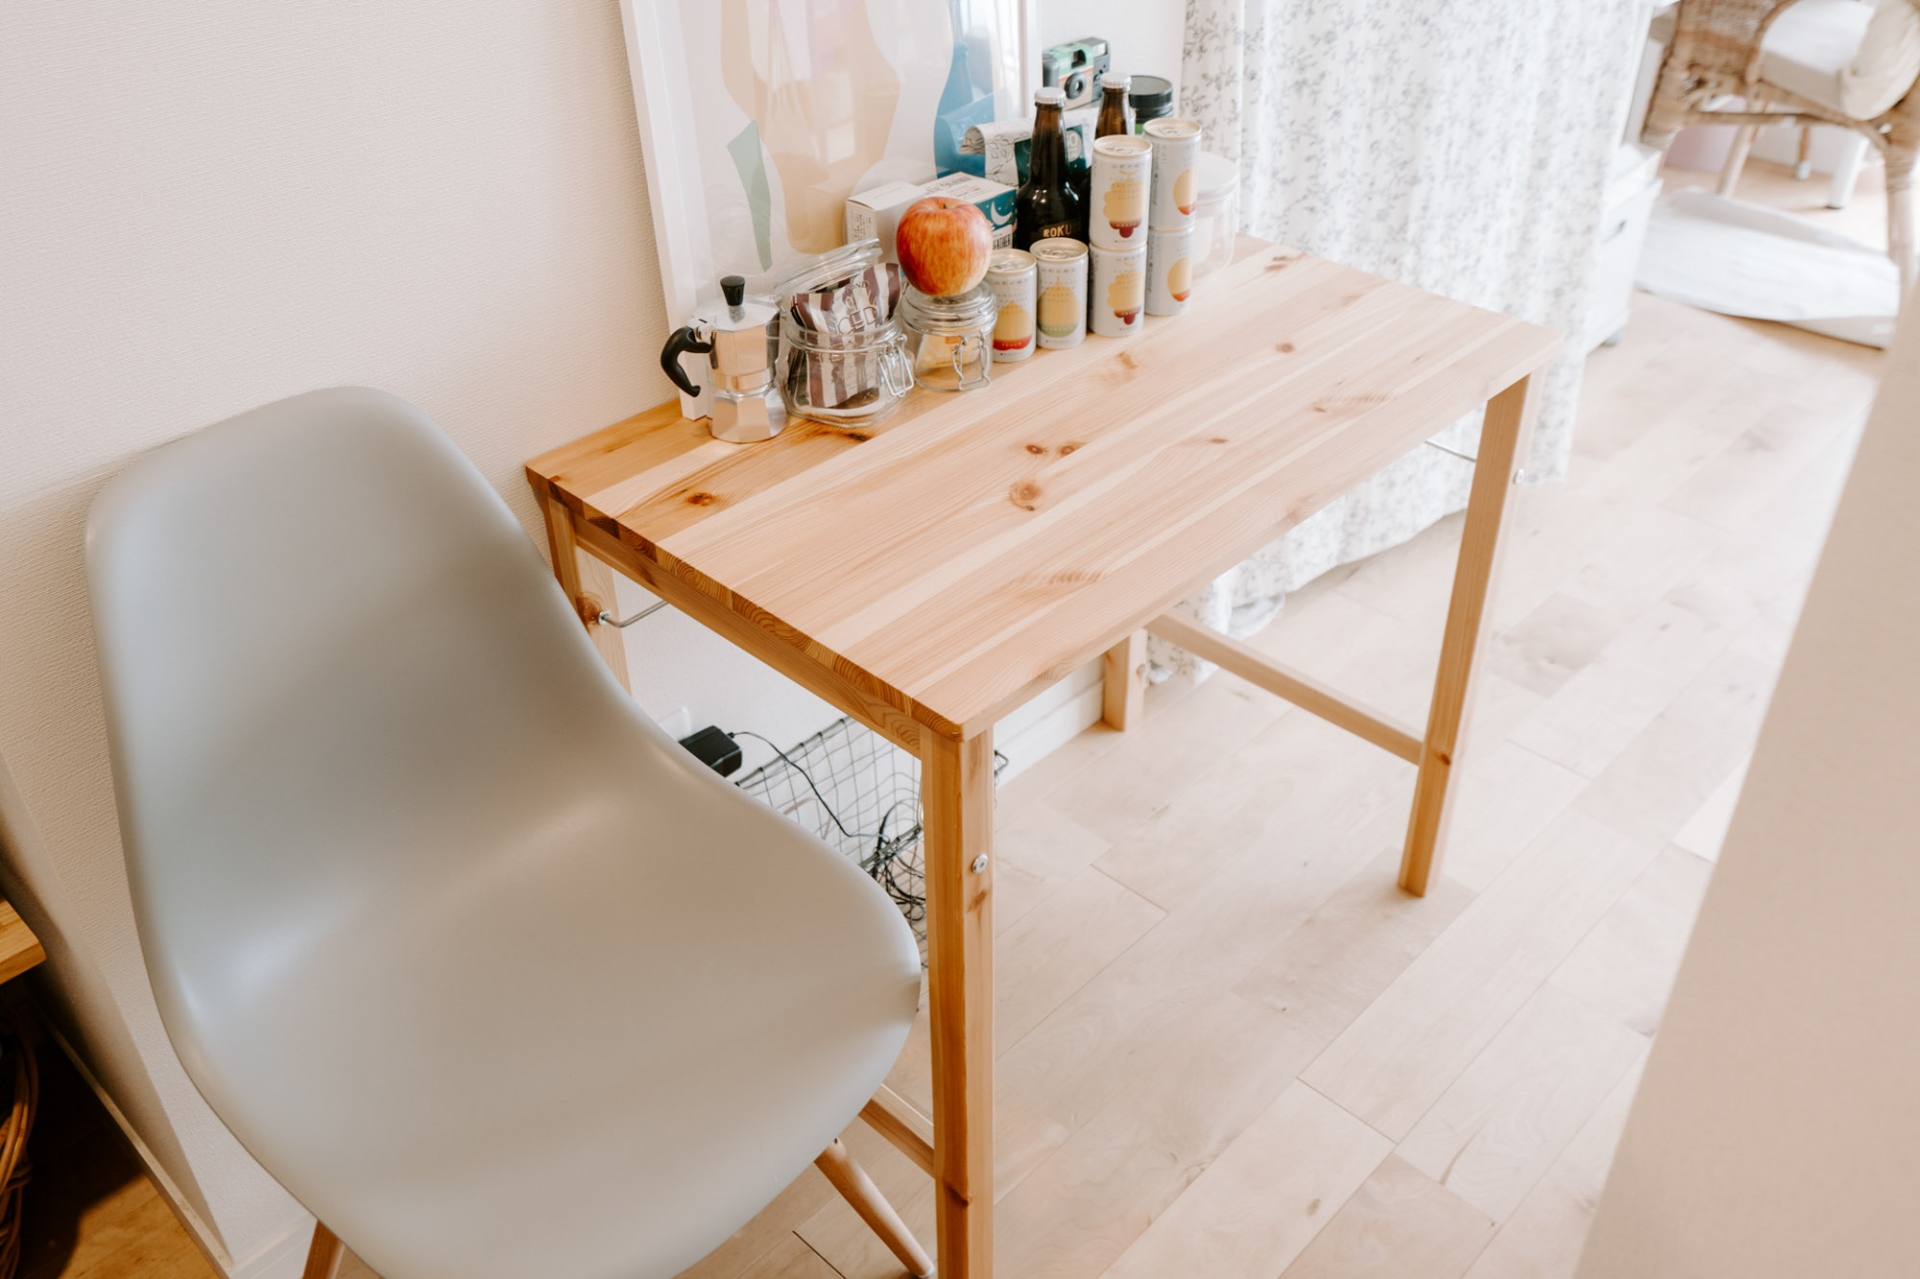 Chiếc bàn gỗ và ghế đơn đặt sát tường, phân cách phòng bếp và phòng làm việc - phòng ngủ. Đây là bàn ăn đồng thời là nơi trưng bày những chai thức uống yêu thích.